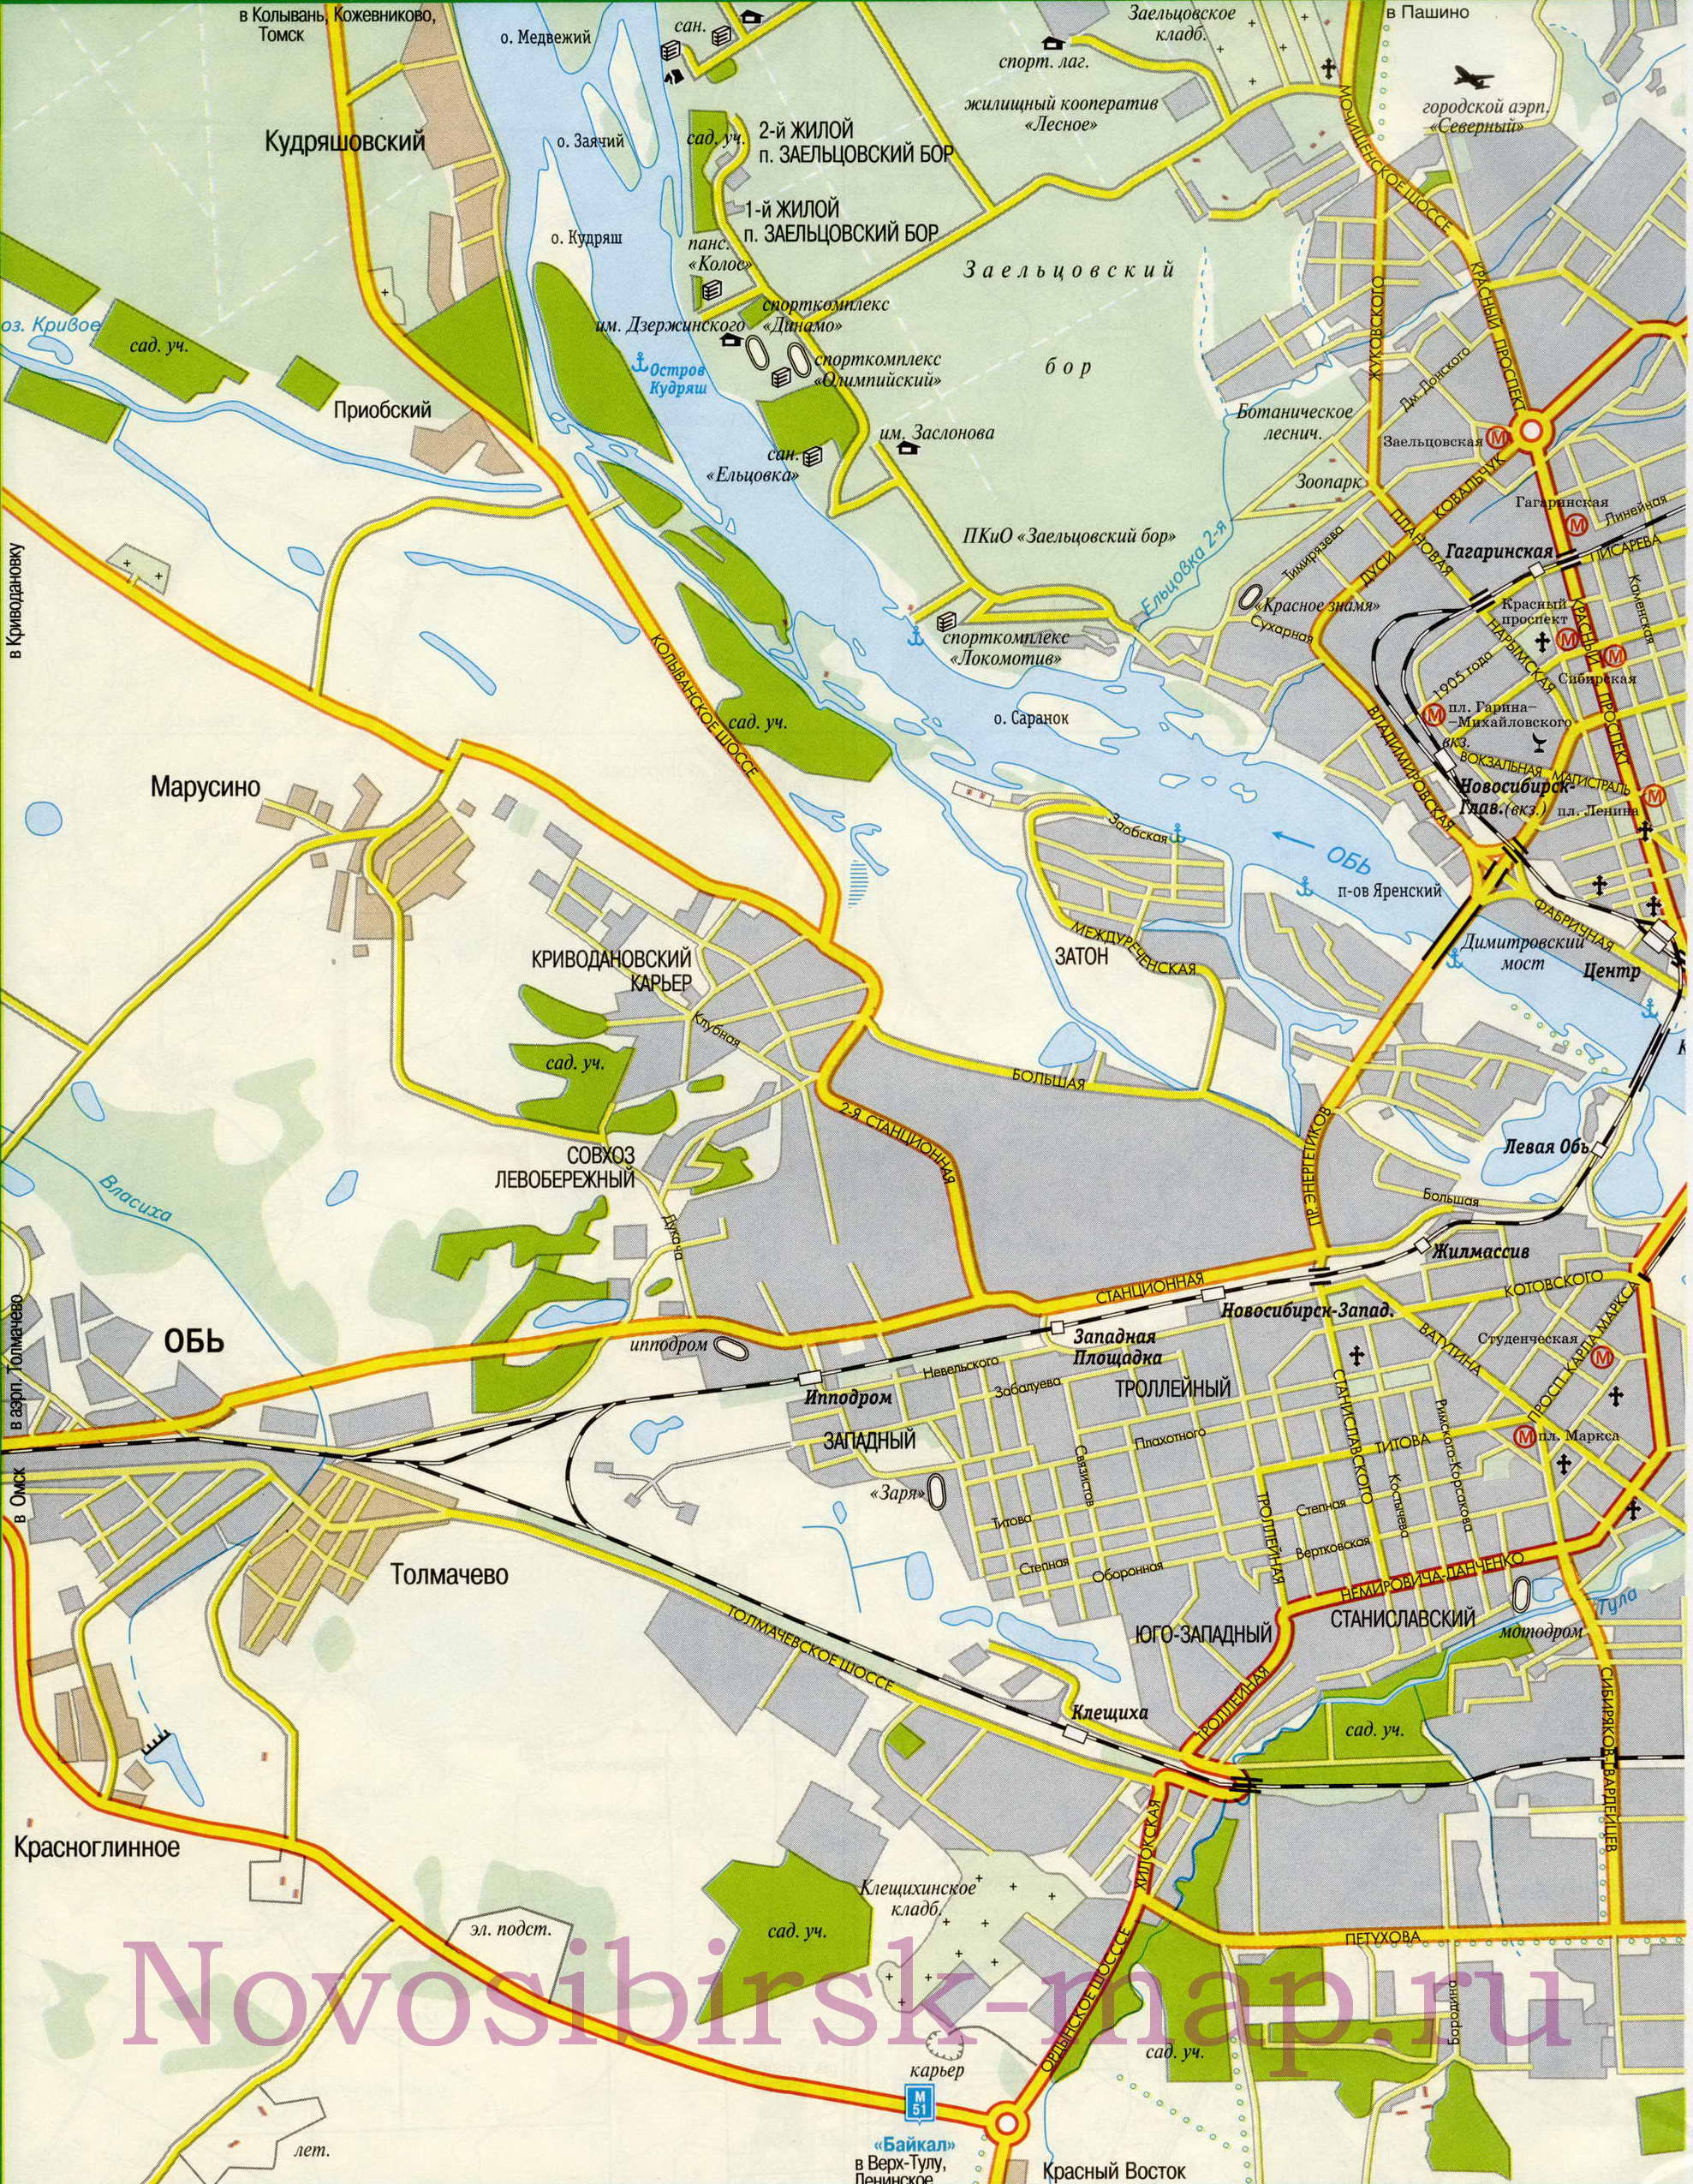  Карта Новосибирска. Карта города Новосибирск с названиями улиц и схемой проезда грузового транспорта, A0 - 